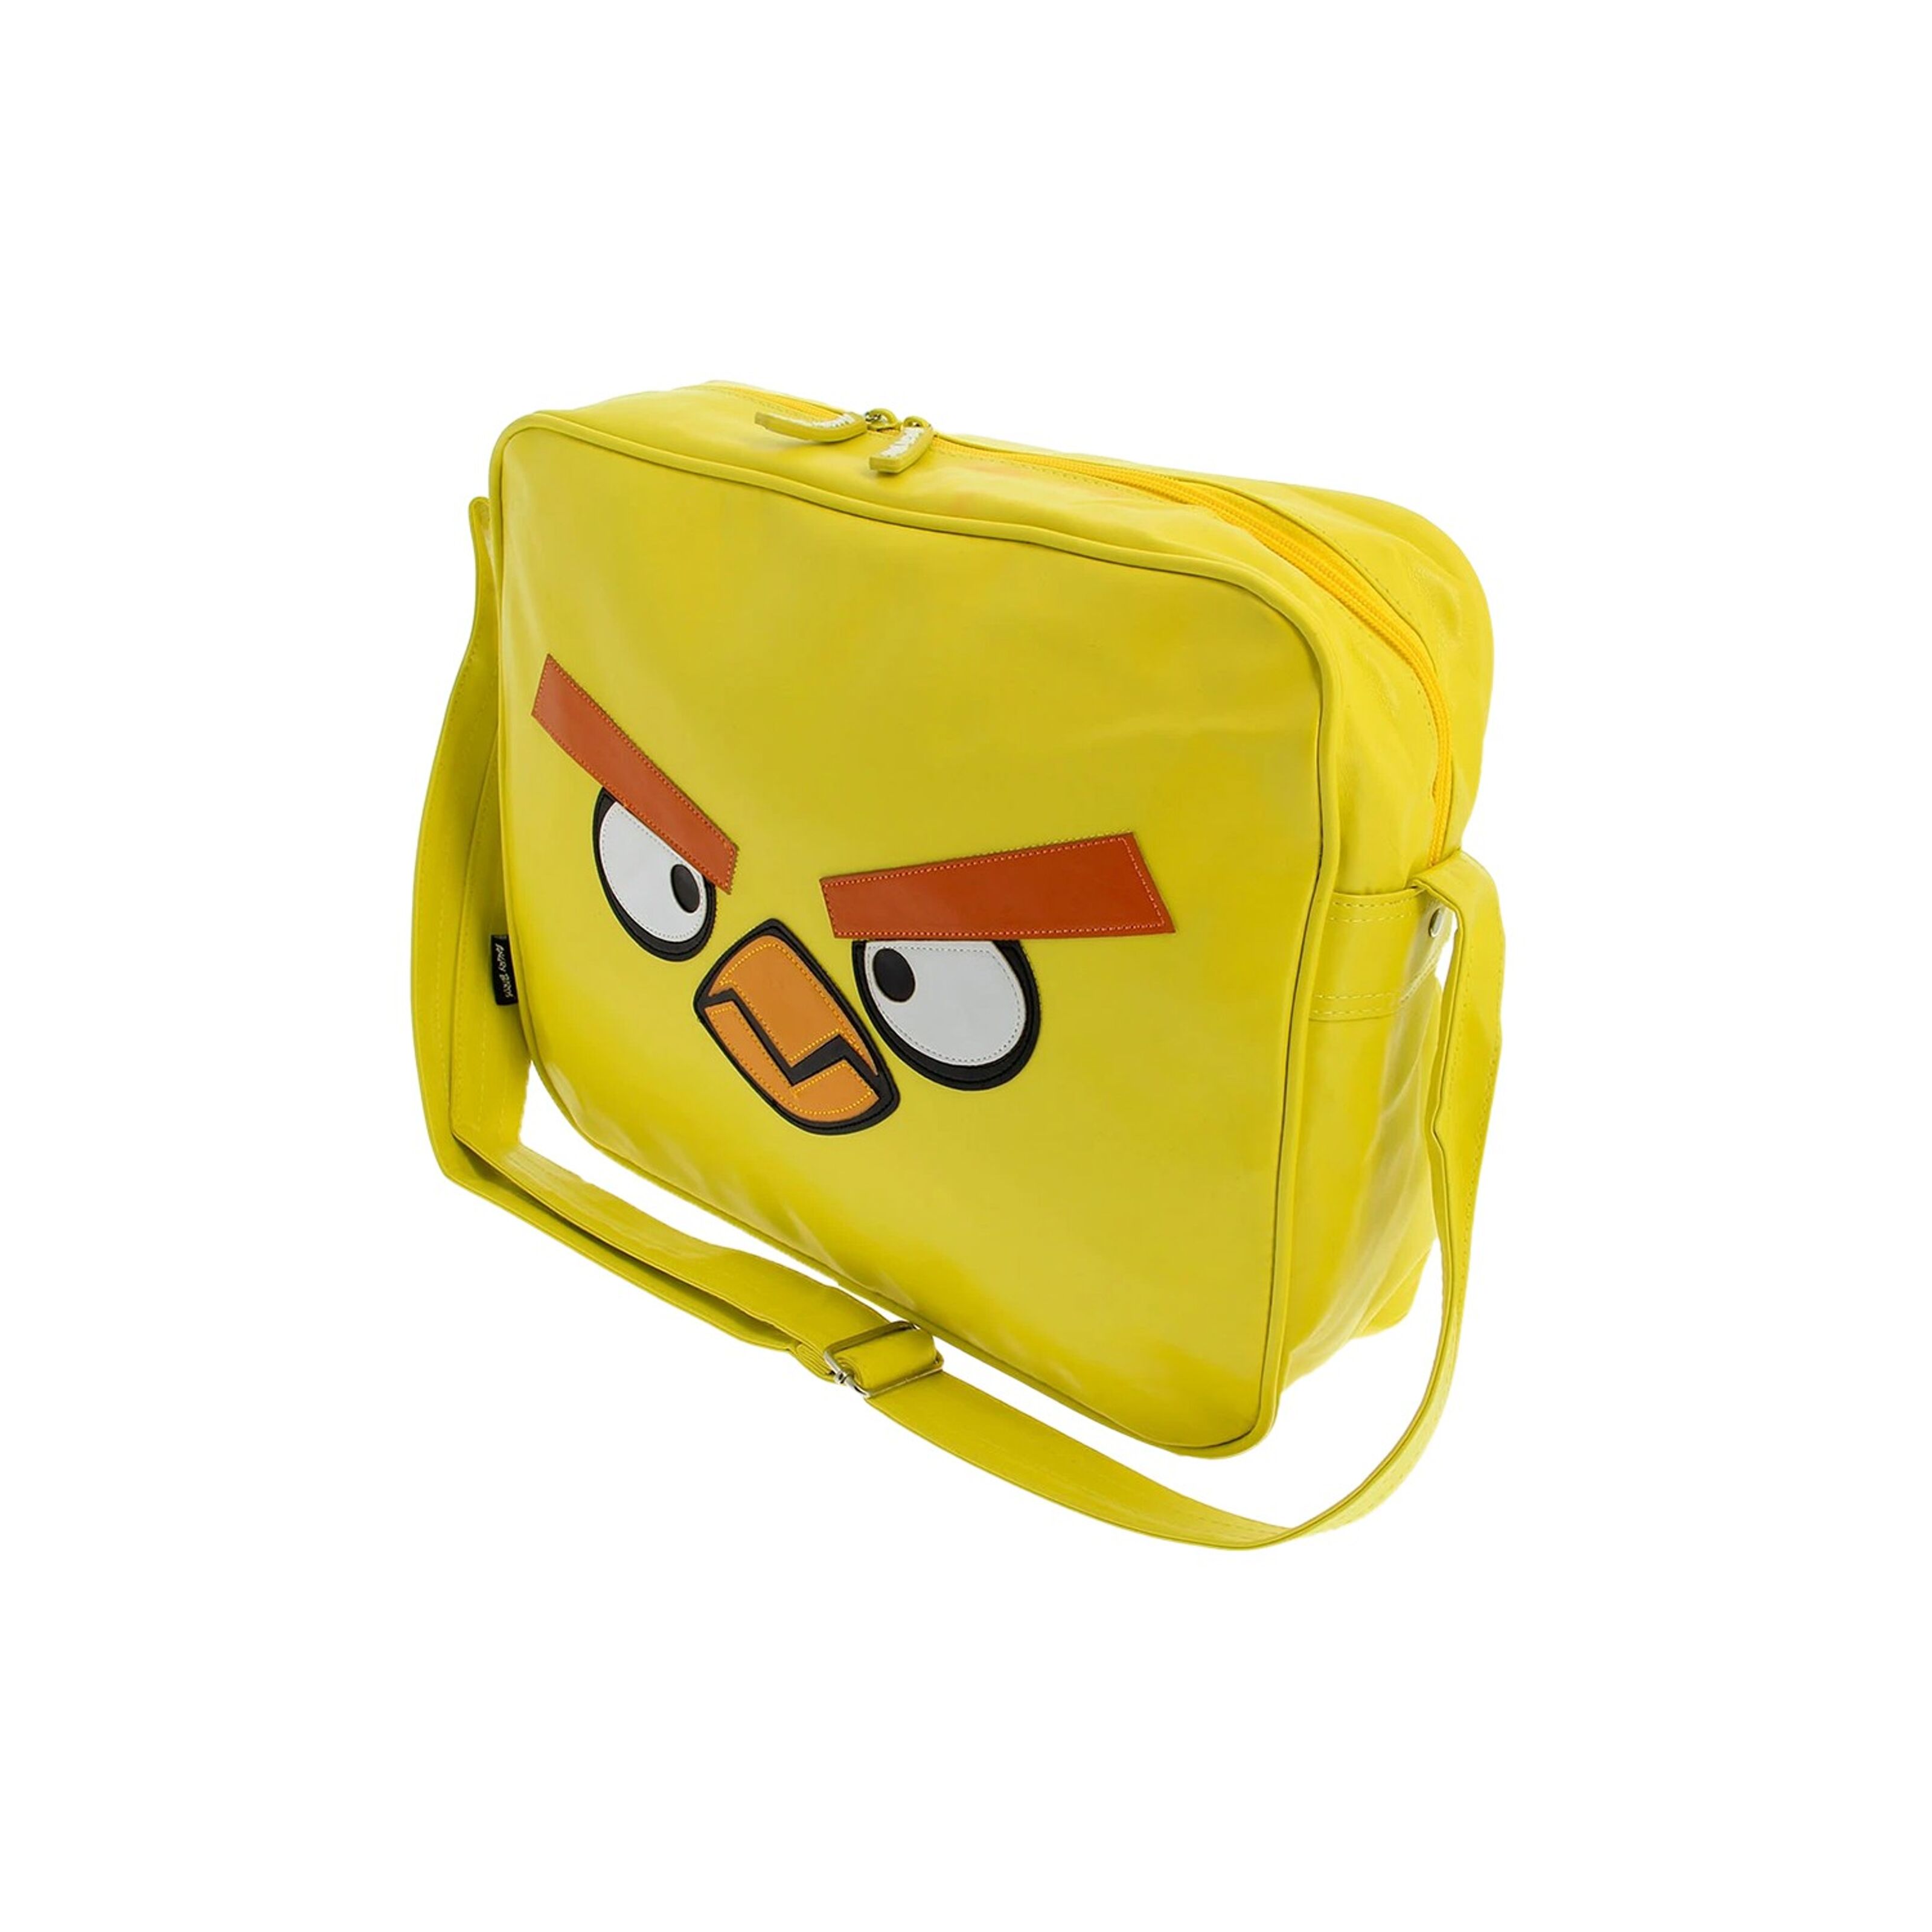 Kaufen Sie Angry Birds Premium Gelbe Umhängetasche zu Großhandelspreisen